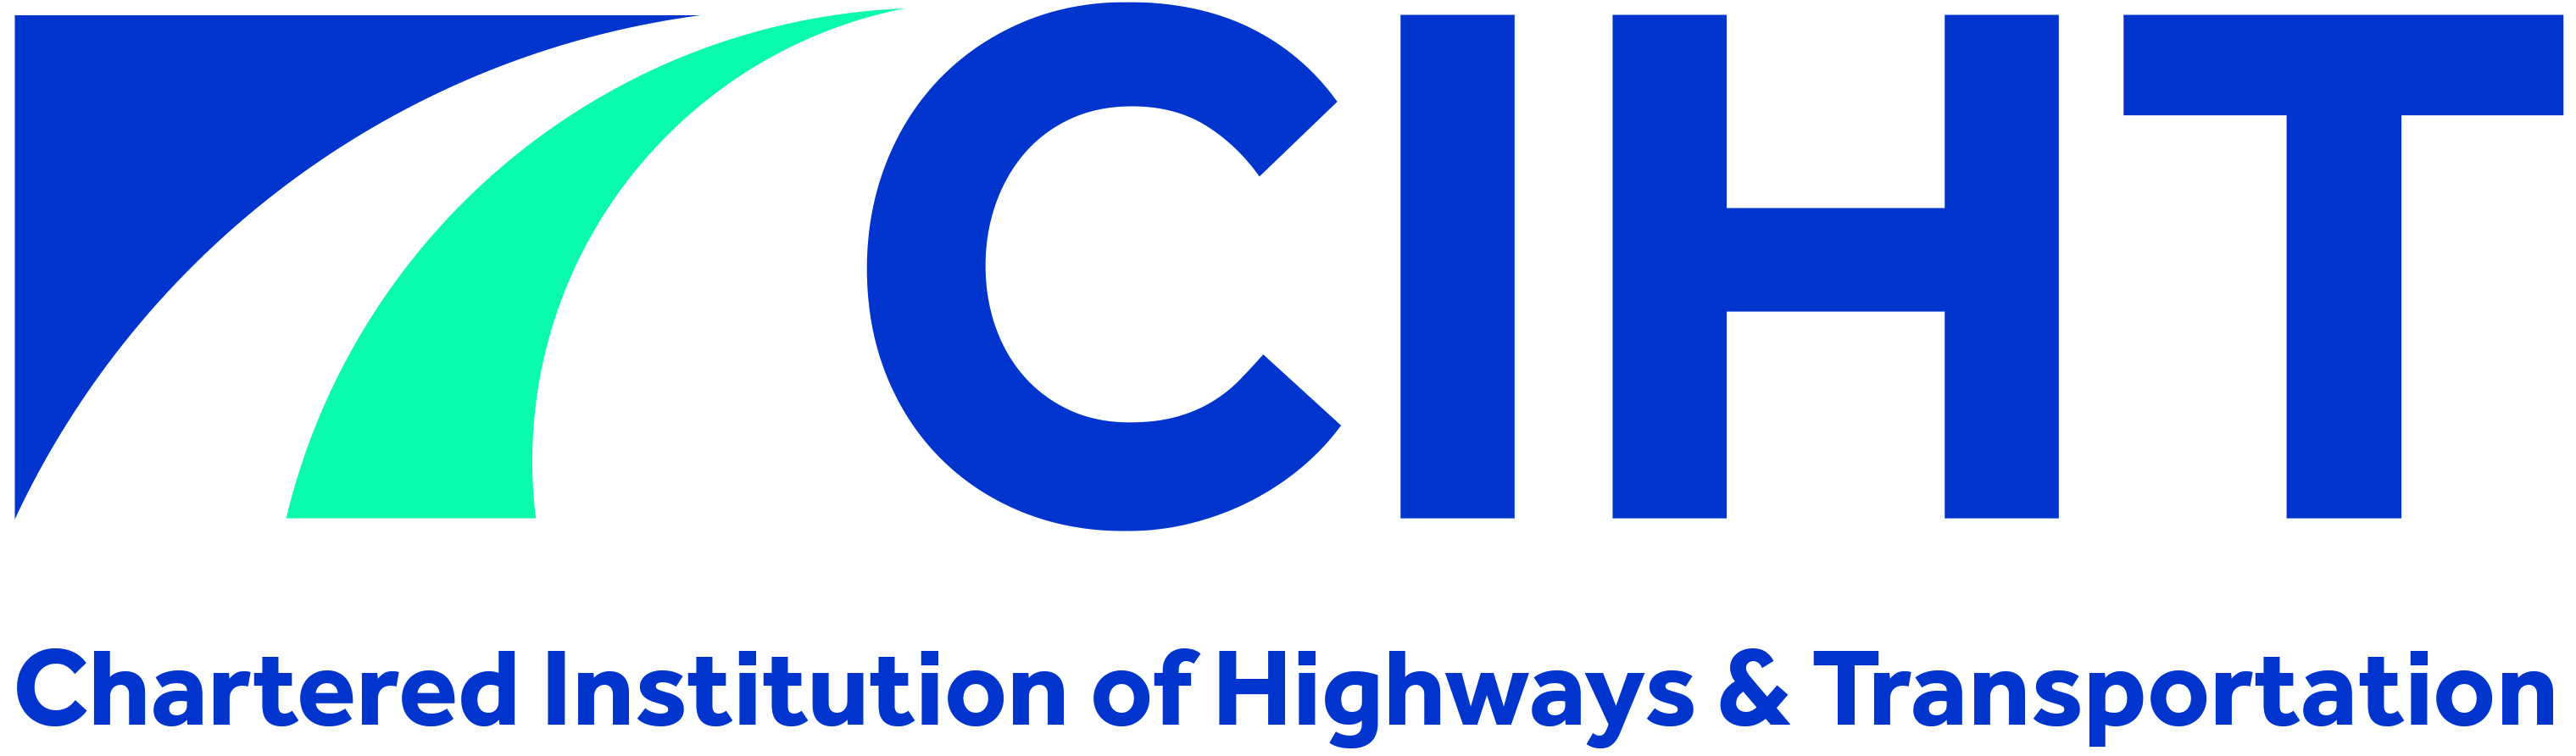 Chartered Institution of Highways & Transportation logo